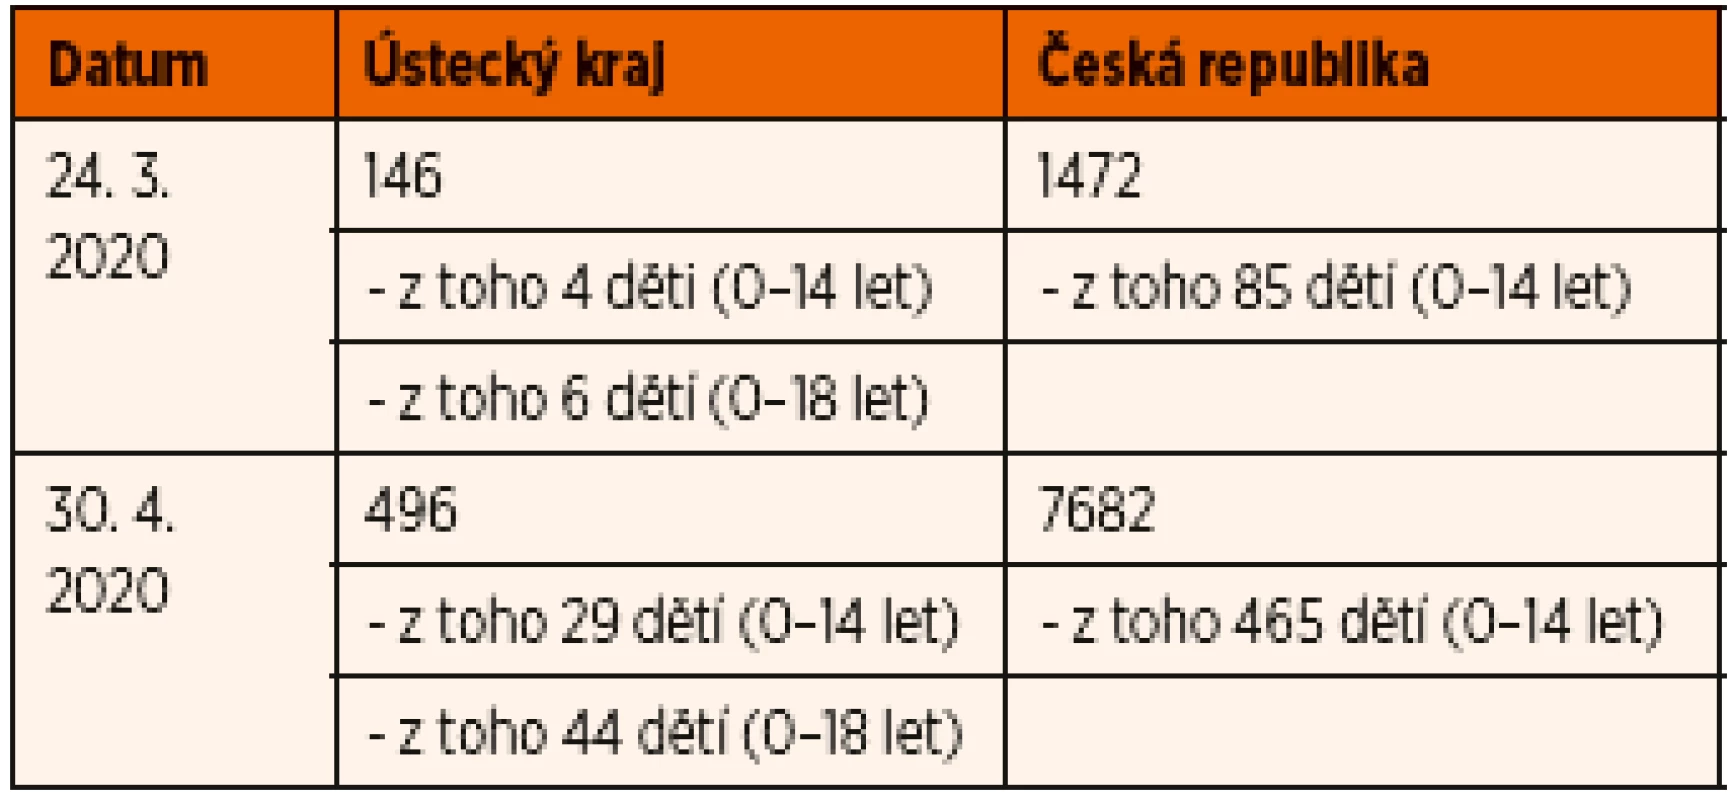 Celkový počet pozitivně testovaných na COVID-19 v Ústeckém kraji a v České republice v období 24. 3. 2020 – 30. 4. 2020 včetně počtu dětí ve věku 0–14 let.